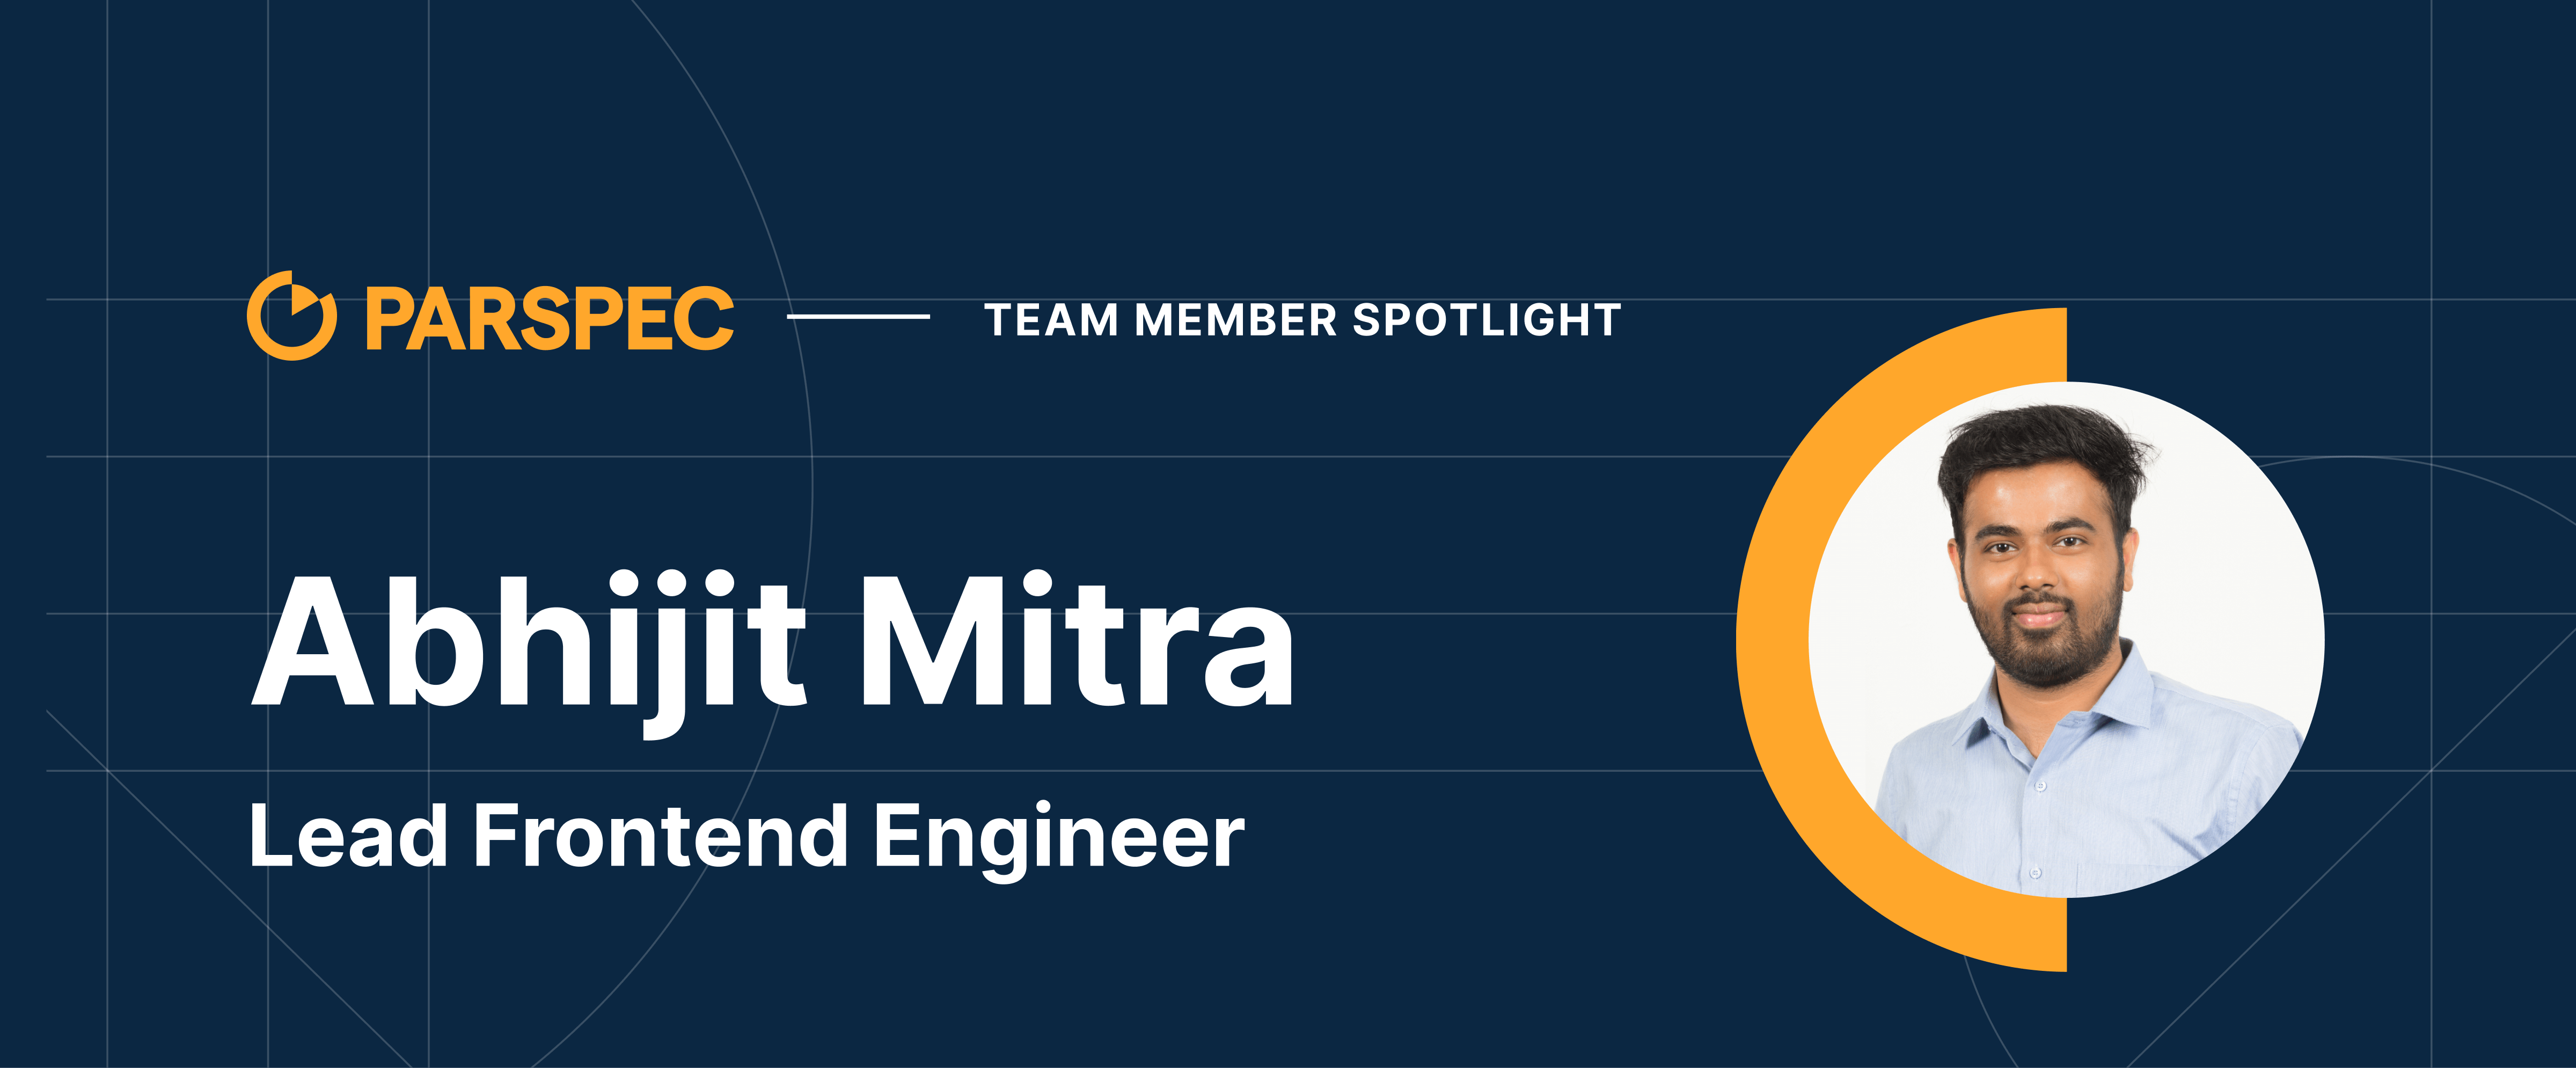 Team Member Spotlight - Abhijit Mitra